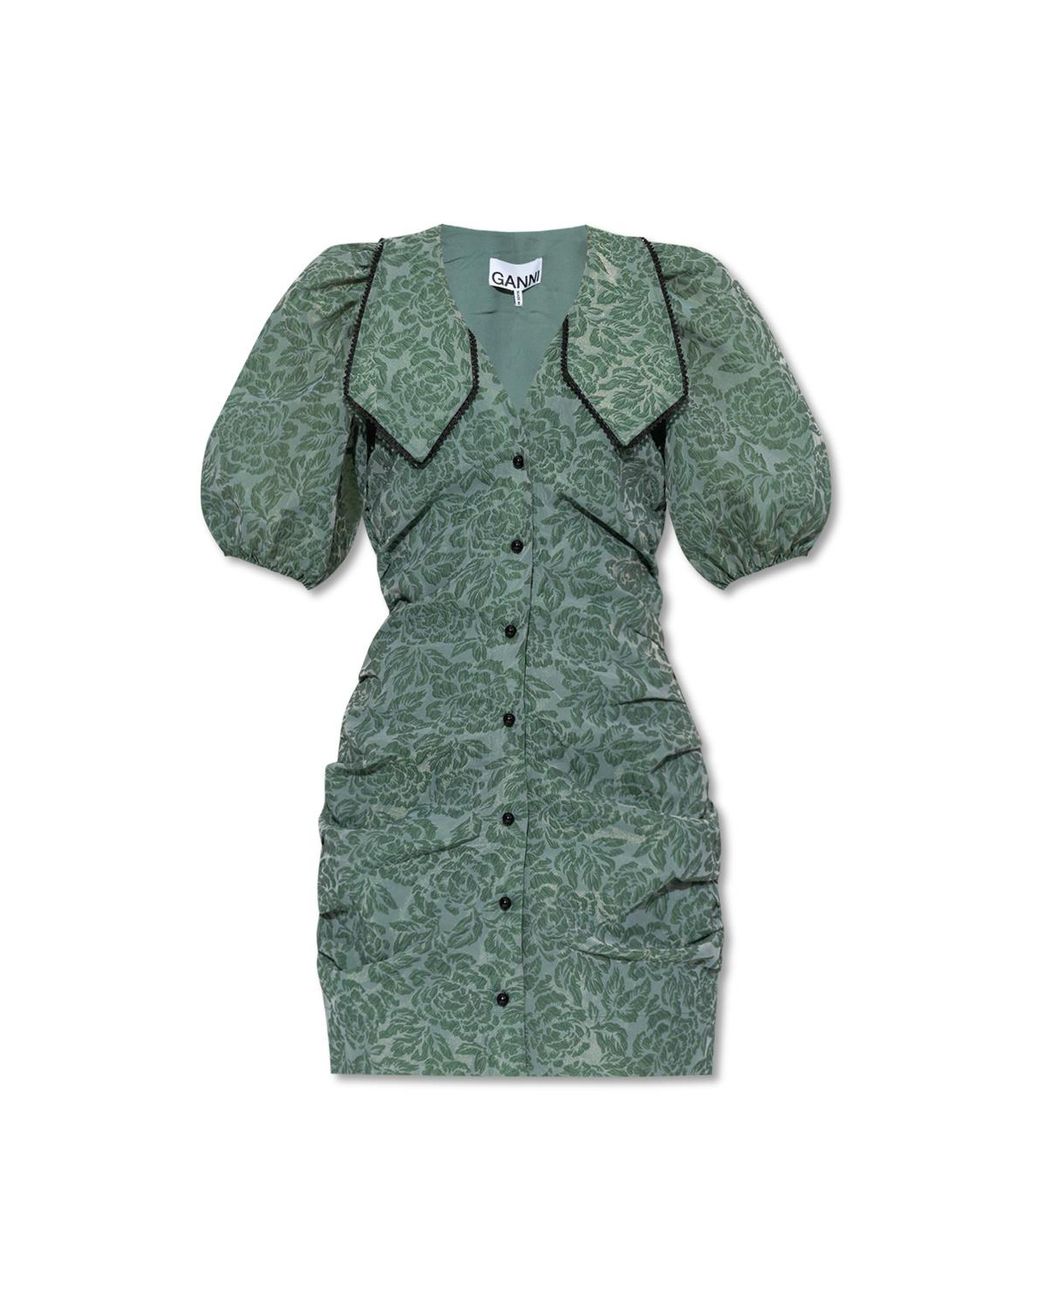 Ganni Jacquard Dress in Green | Lyst